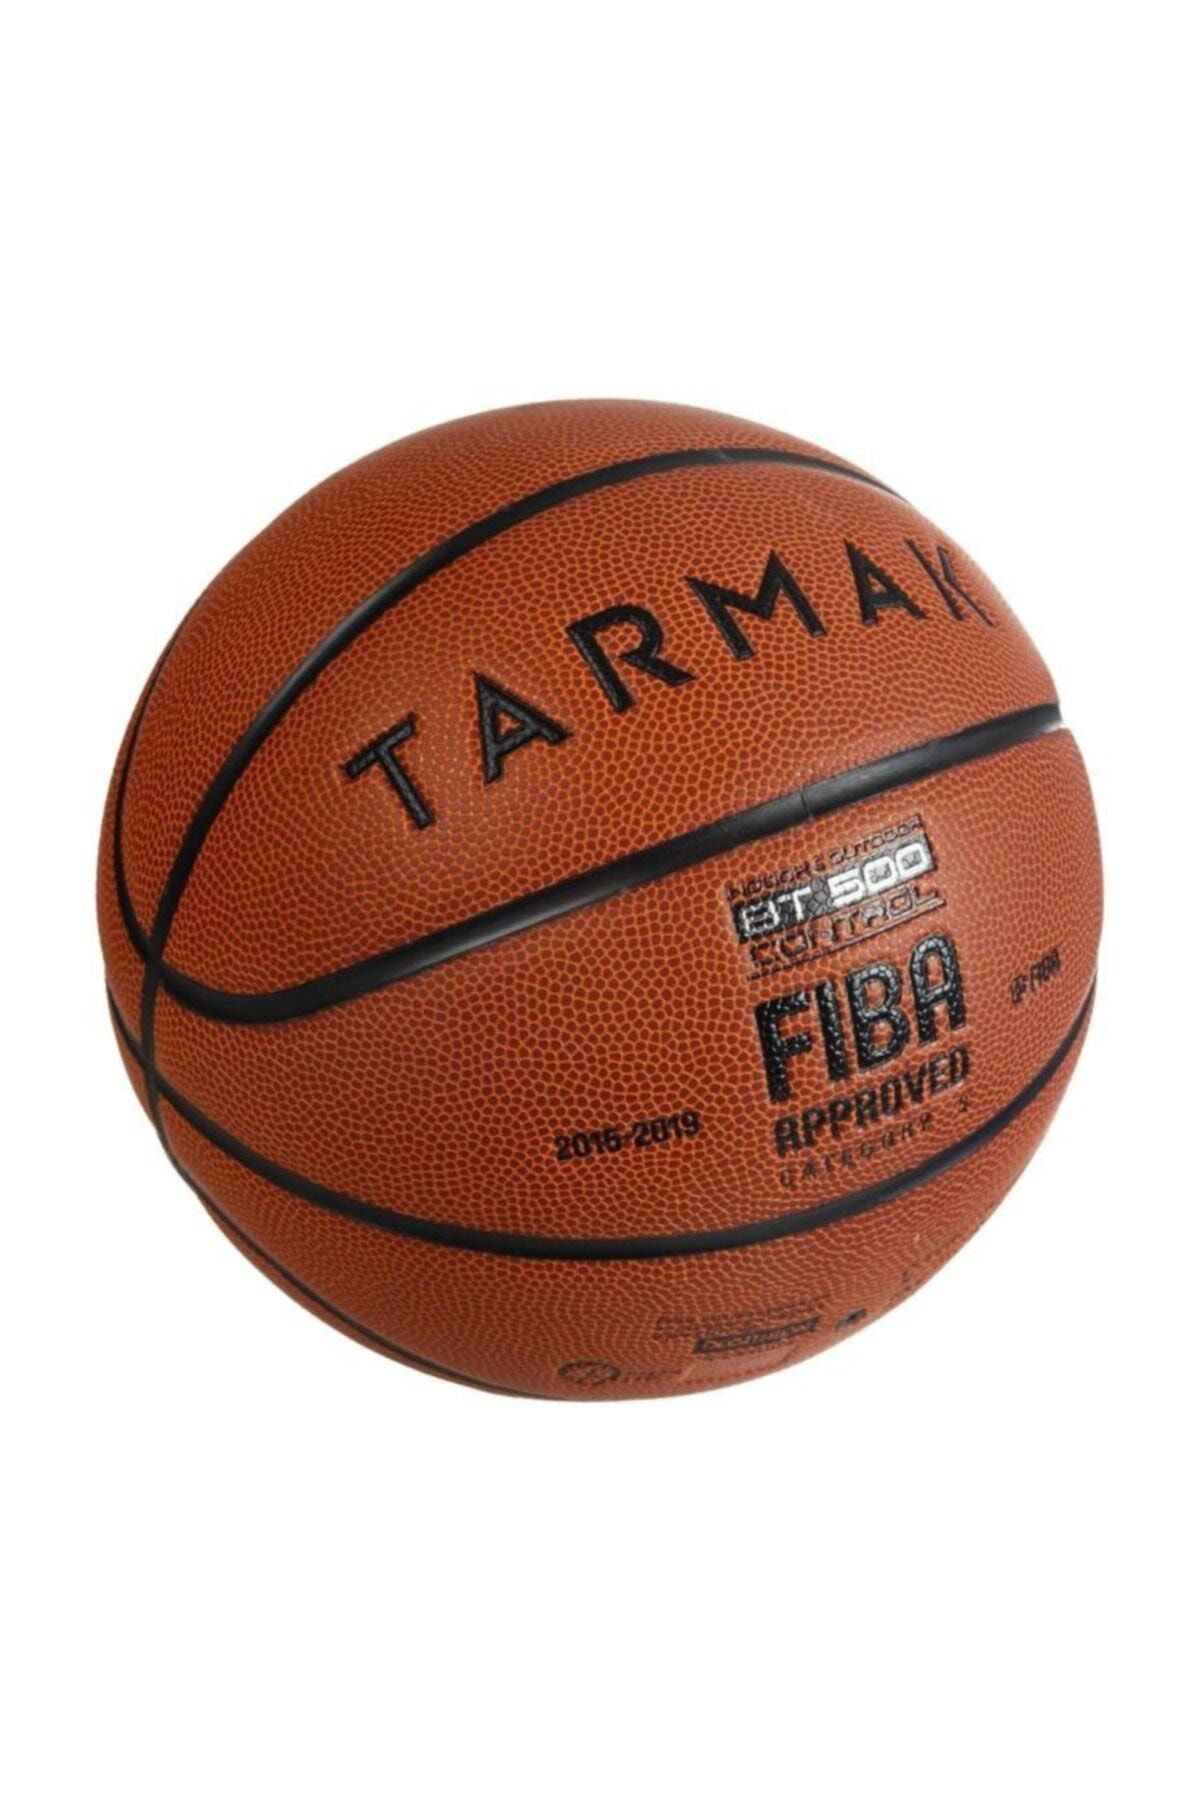 Tarmak Basketbol Topu - 5 Numara - Fıba Onaylı - Bt500